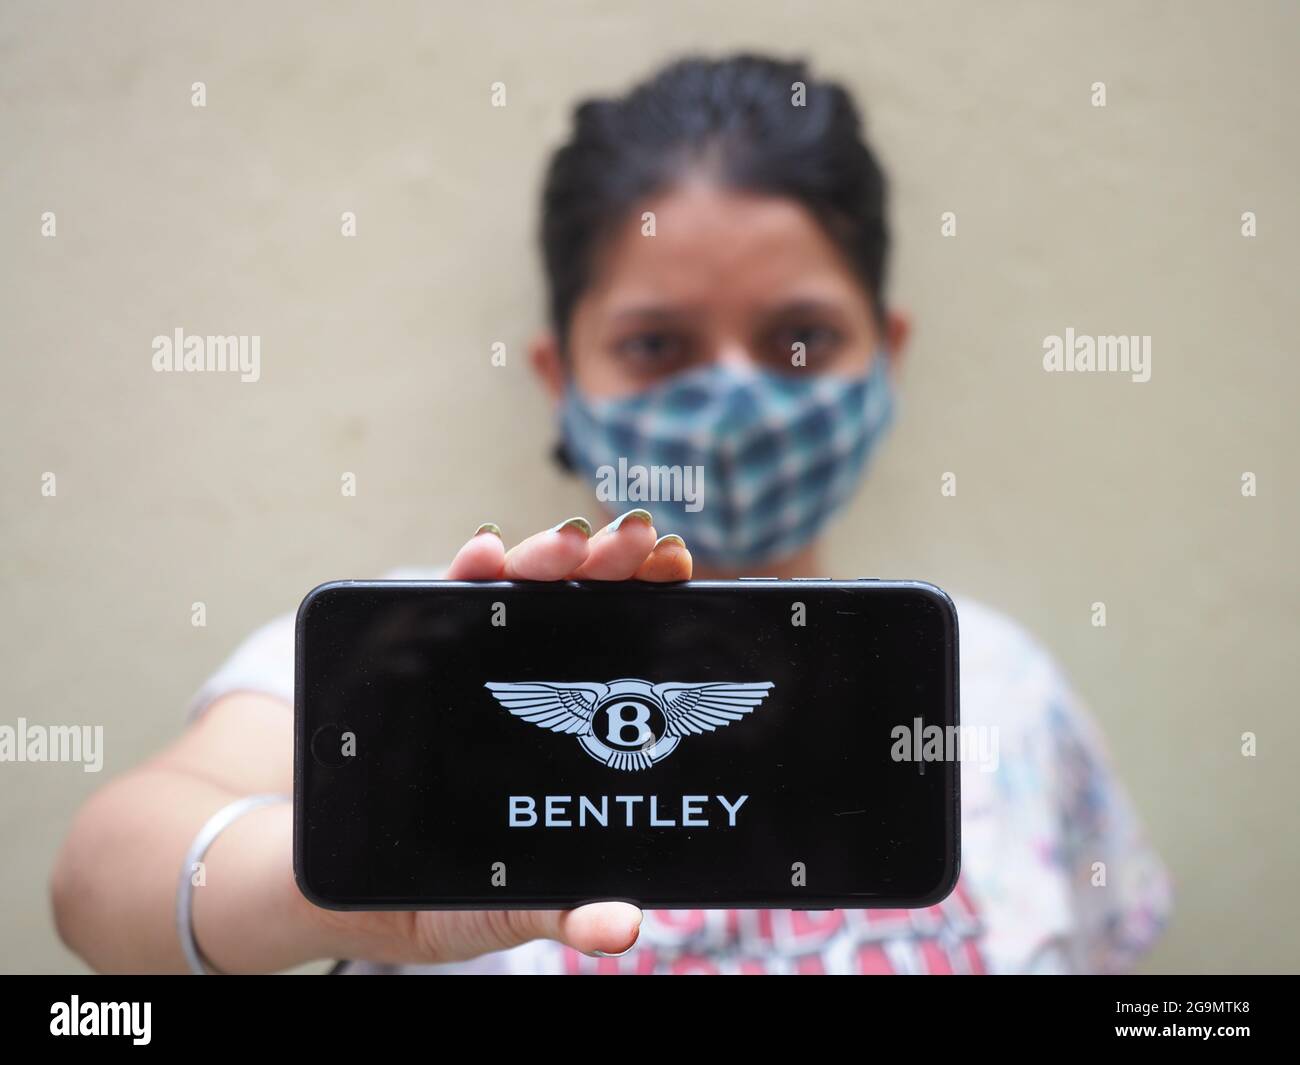 KOLKATA, INDIA - 26 luglio 2021: Il servizio di lancio DI BENTLEY in India. Logo BENTLEY sullo schermo del telefono cellulare con spazio per la copia. Vista dall'alto in primo piano. Foto Stock